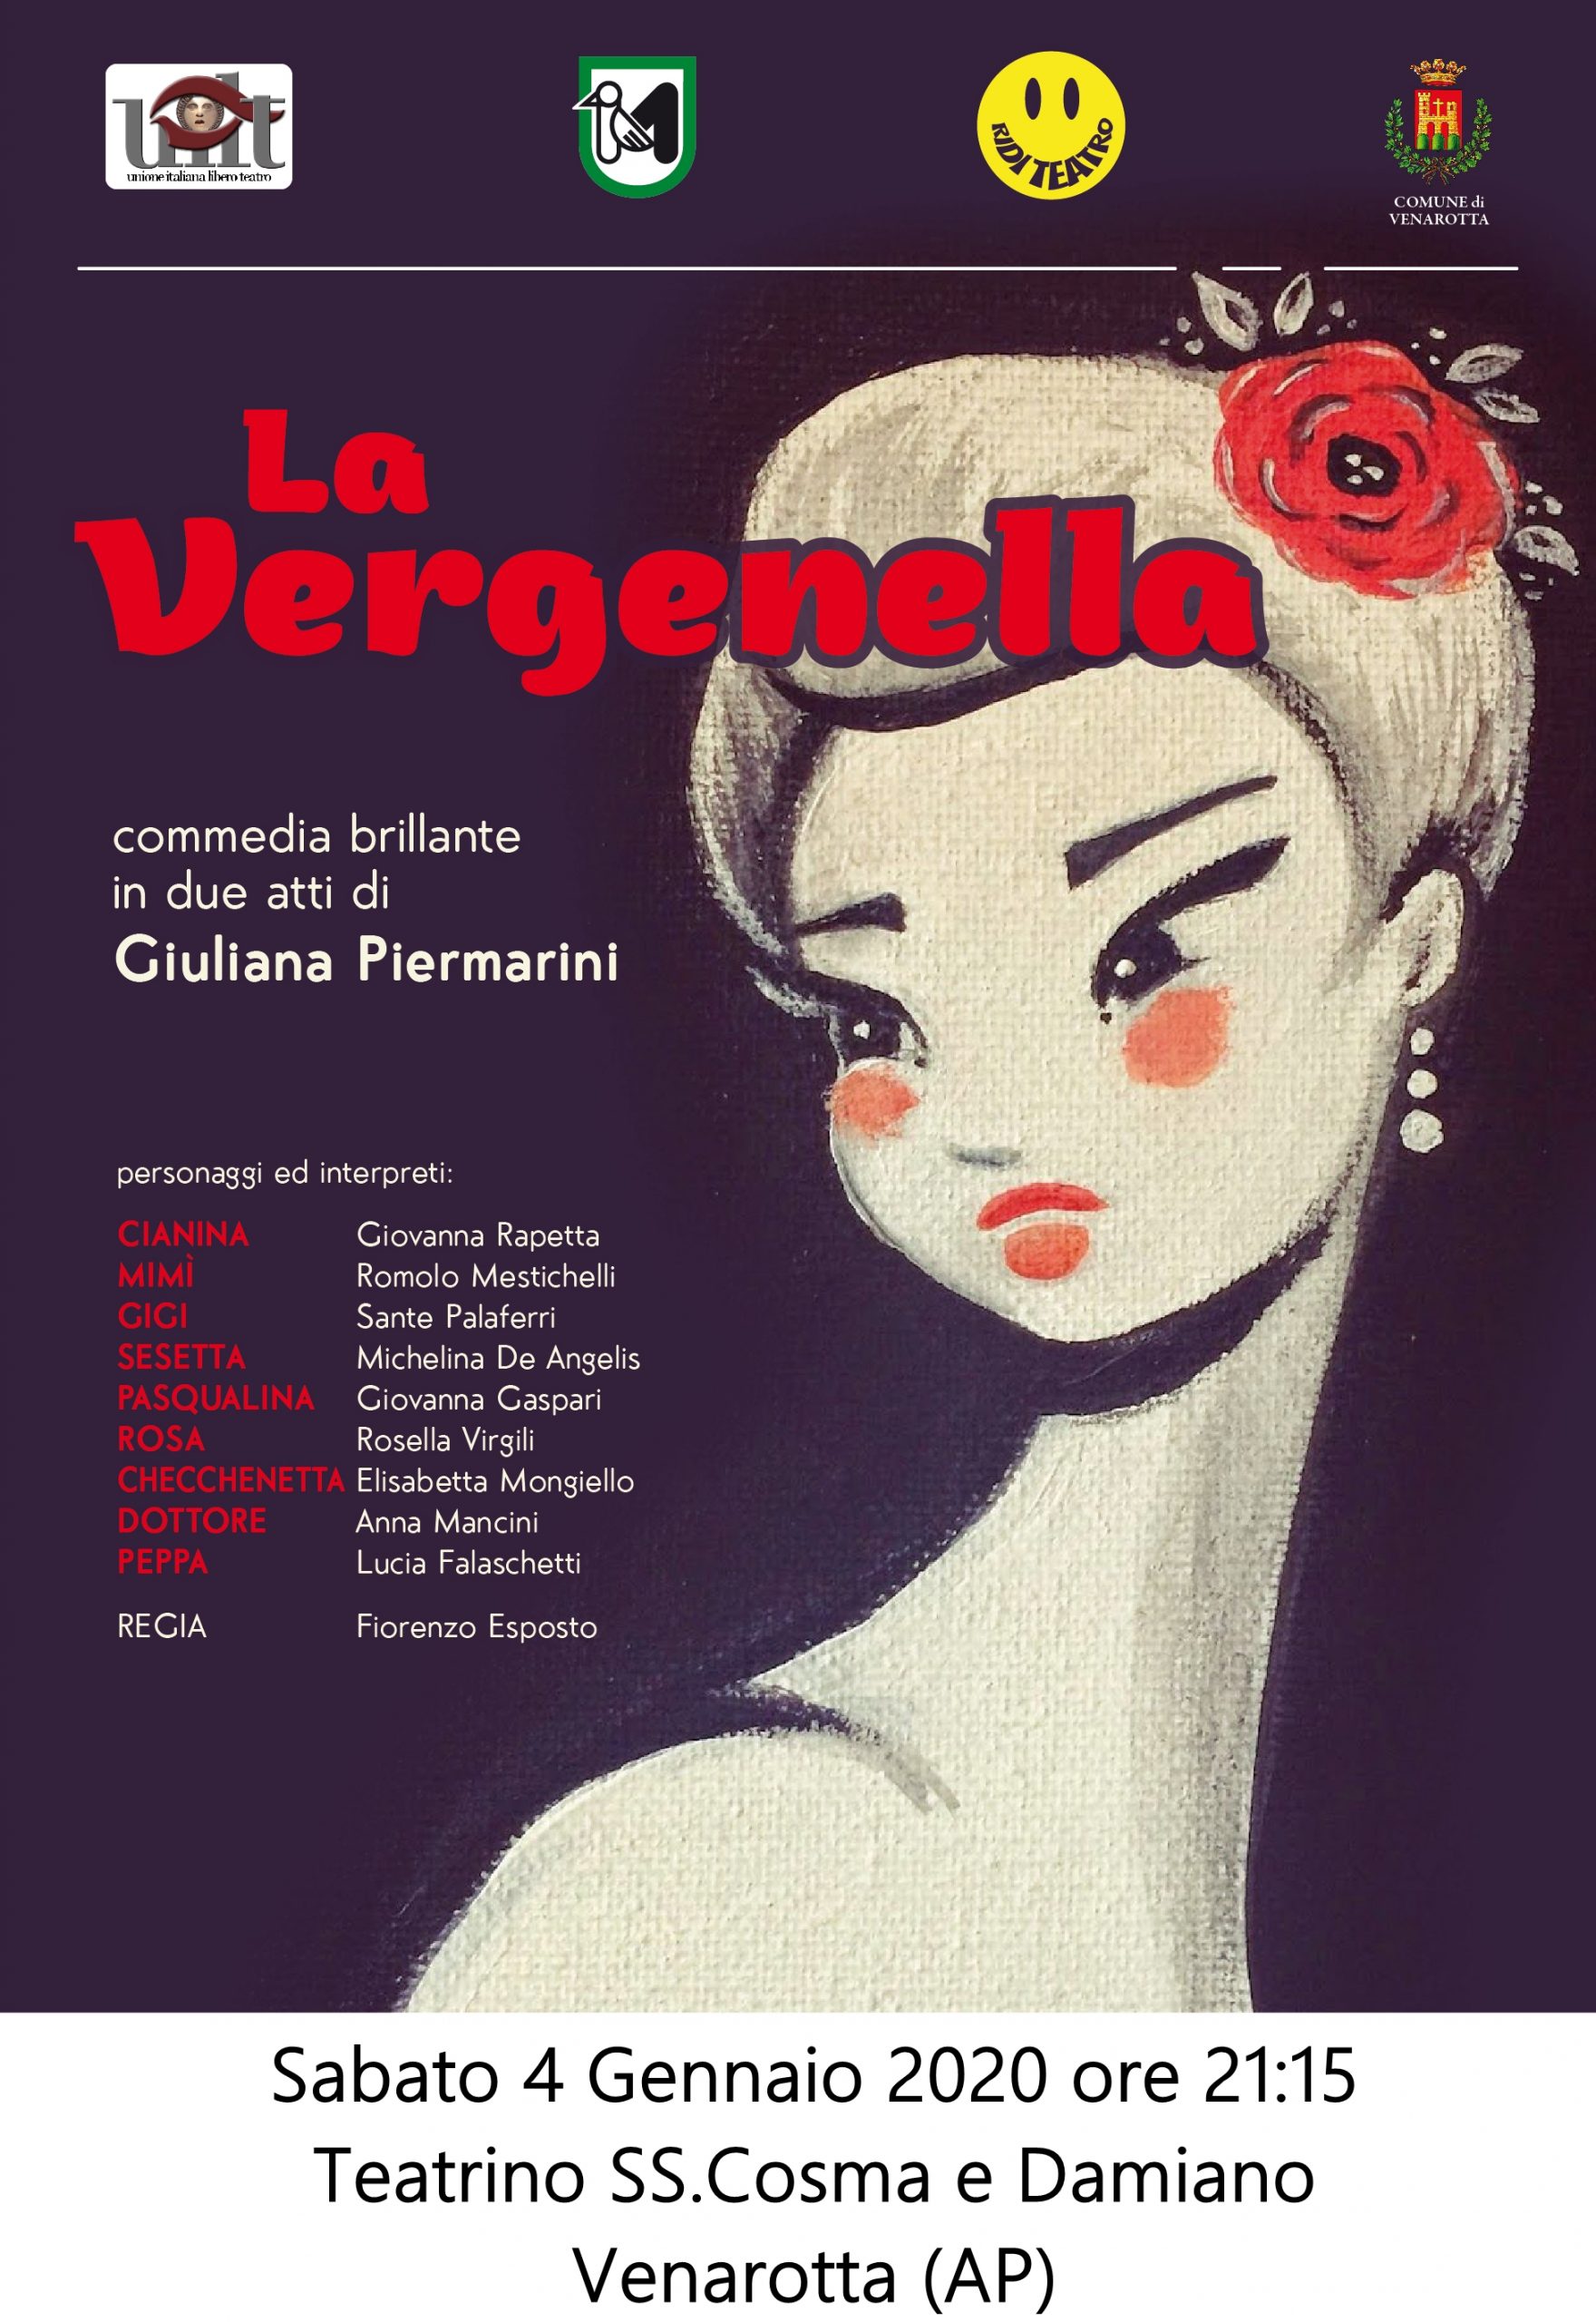 La Vergenella, commedia scritta da Giuliana Piermarini per la regia di Fiorenzo Esposto